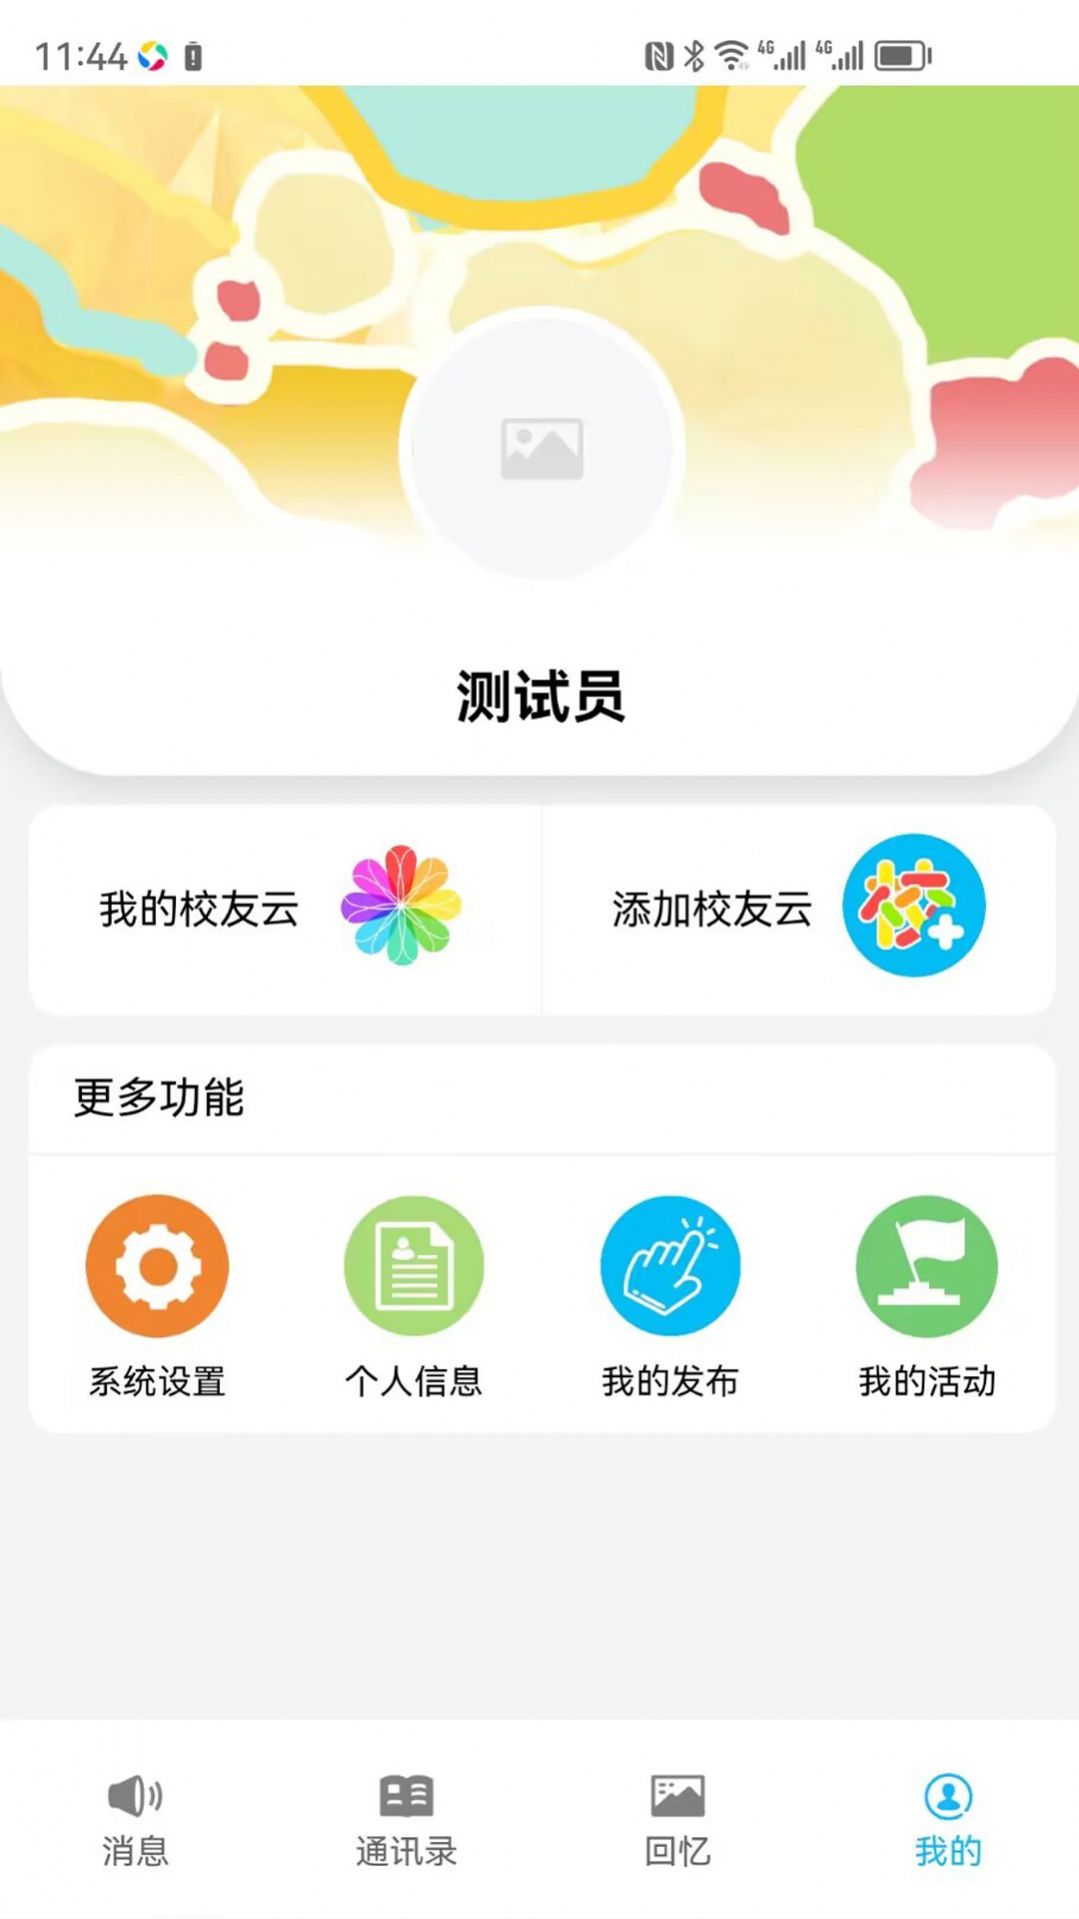 慧脑校友云app官方版图片1